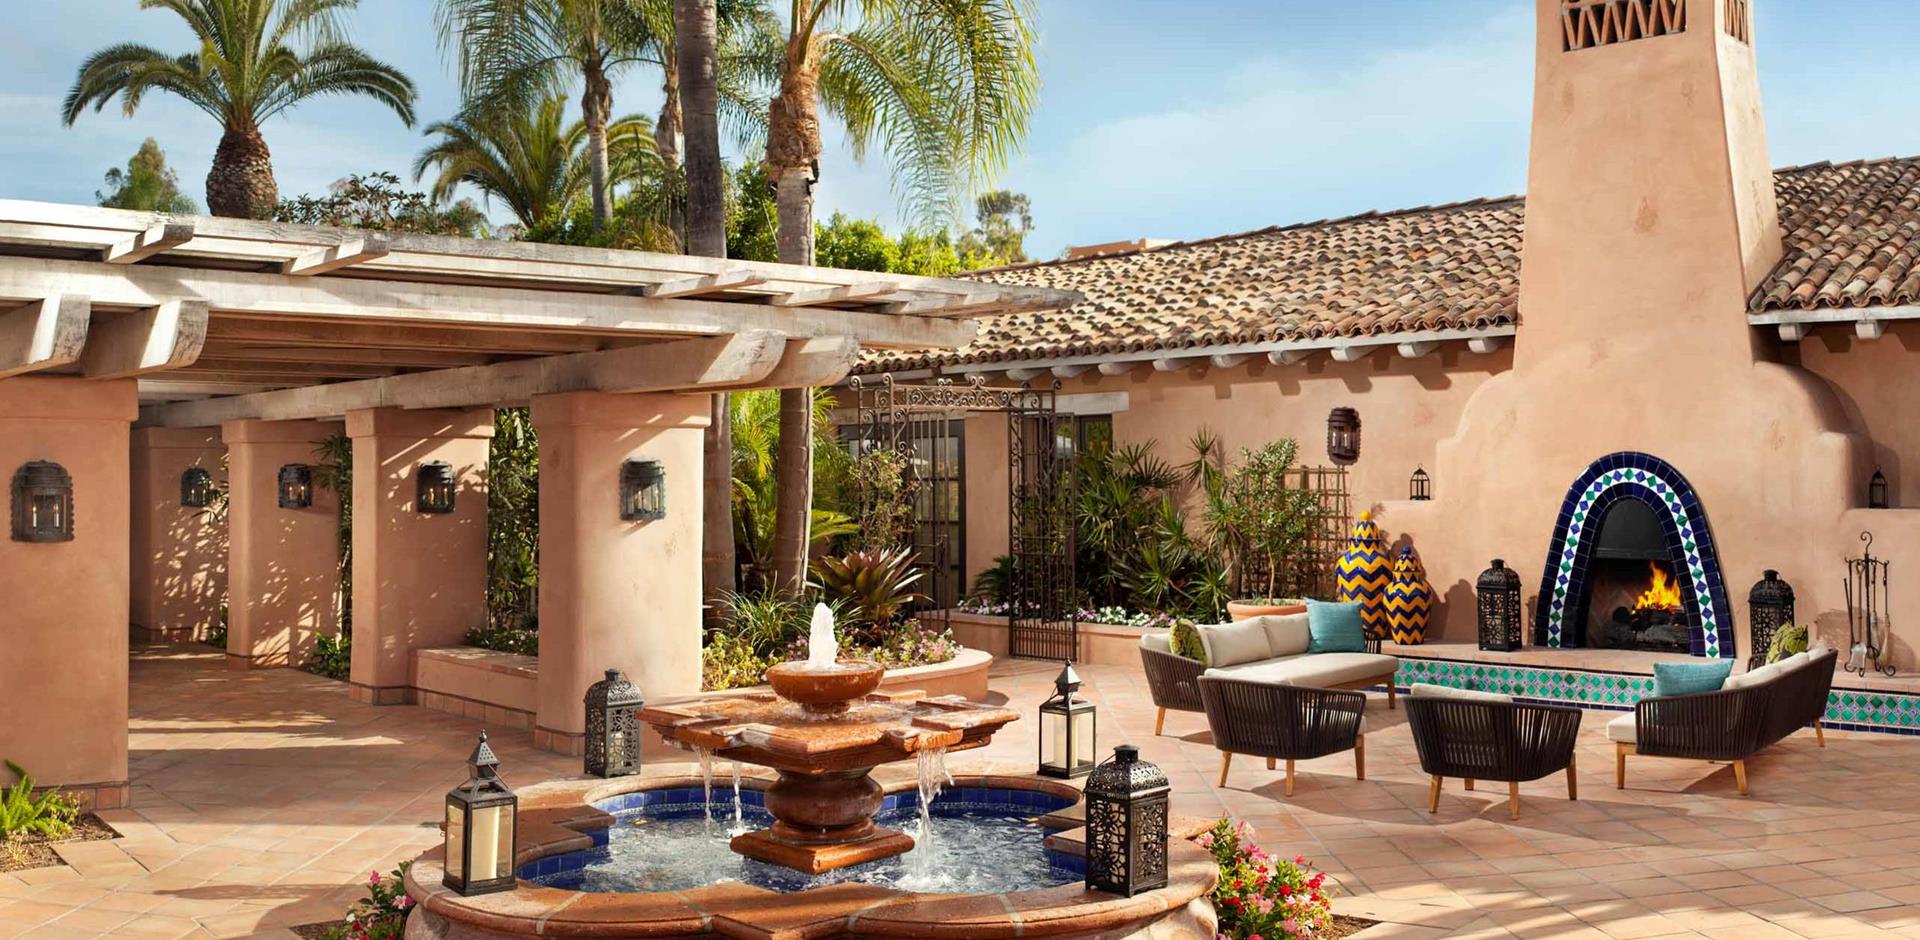 Fountain courtyard, Rancho Valencia Resort and Spa, California, USA